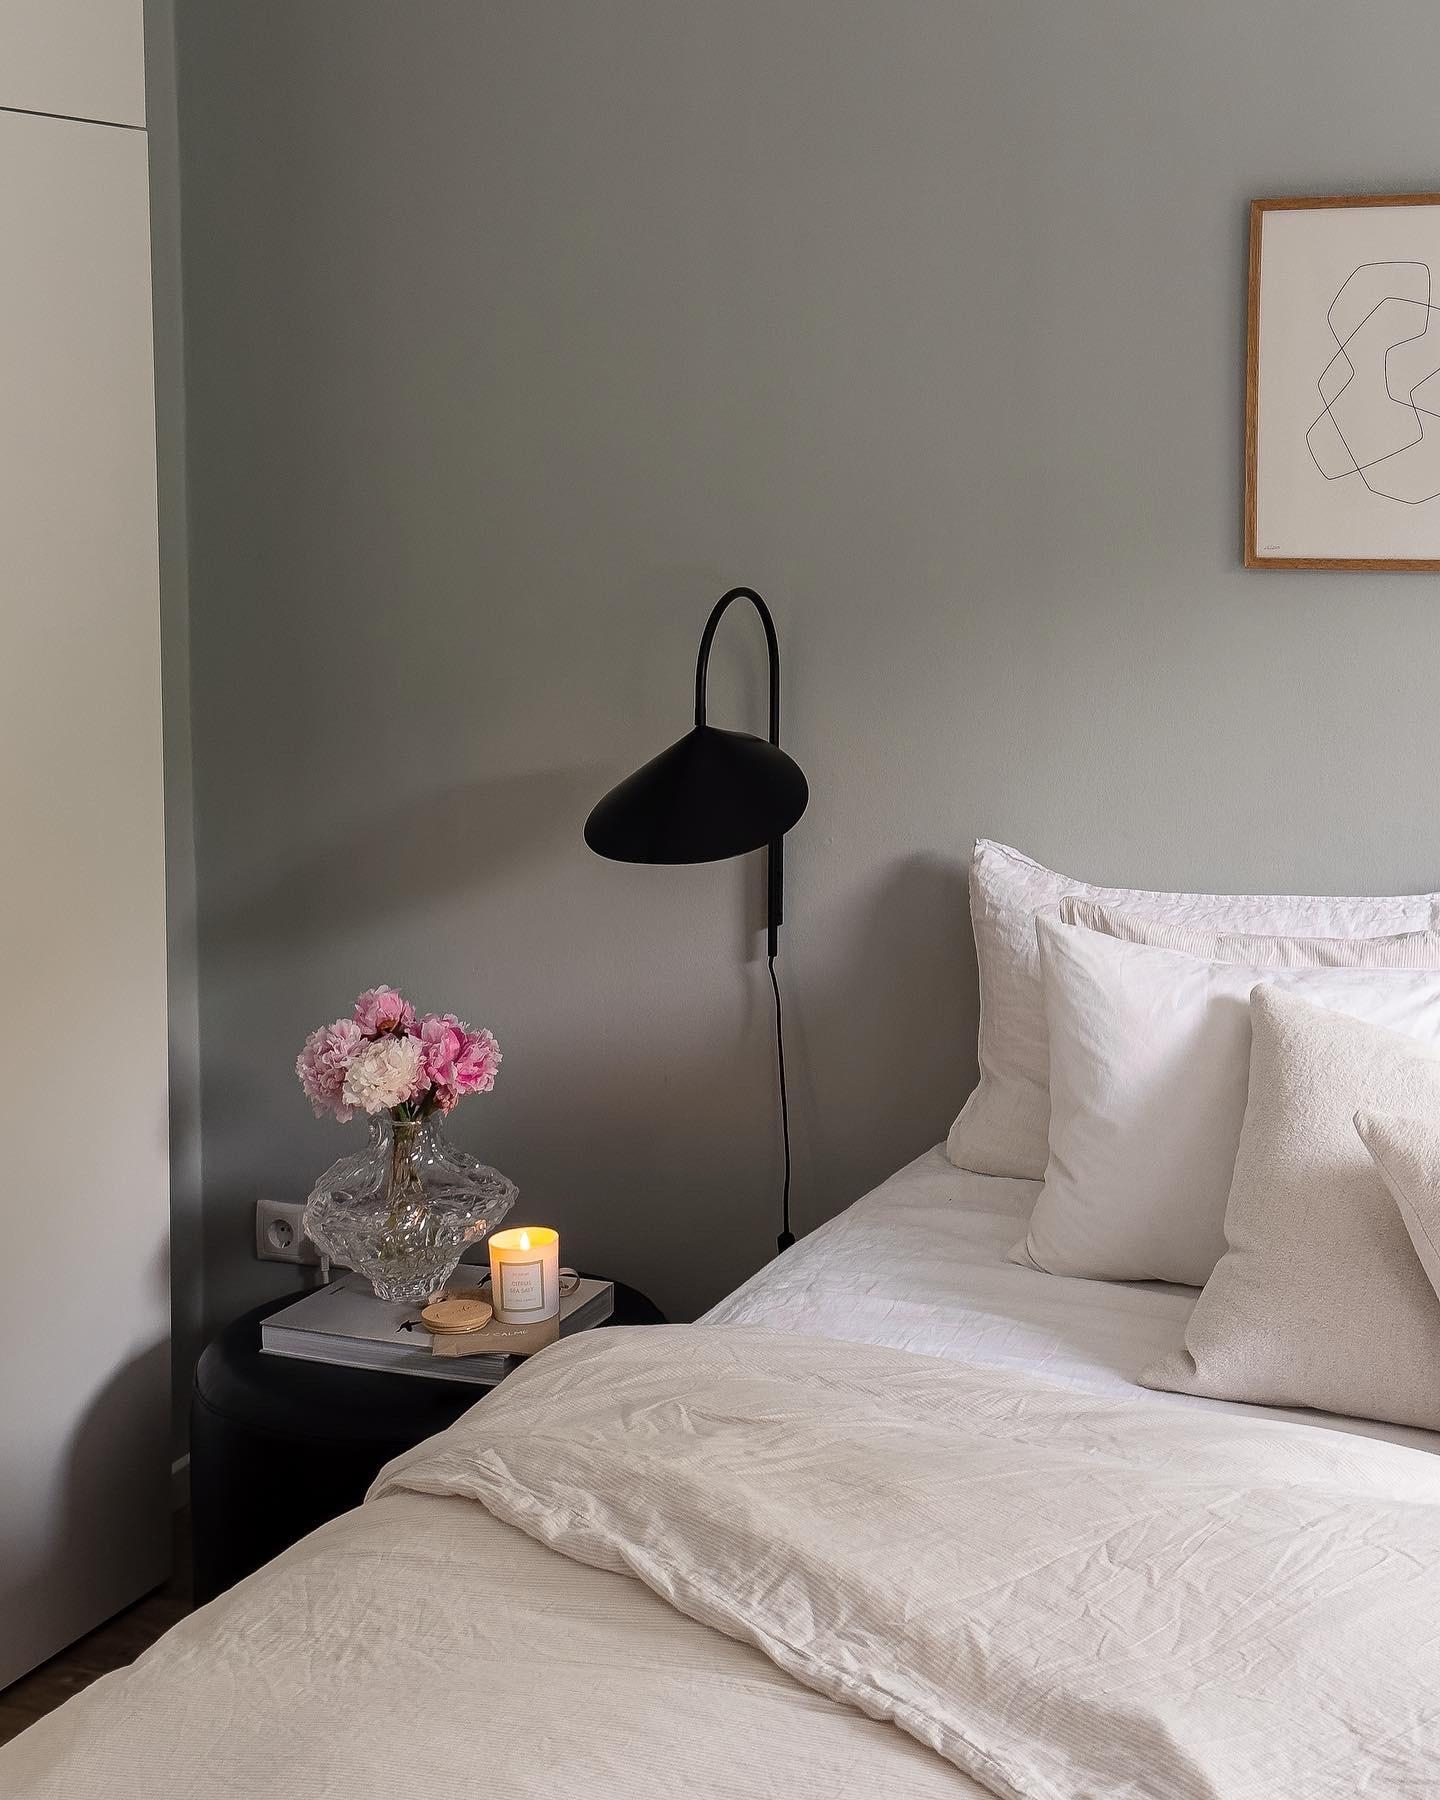 hey und happy monday!🤍
heute mal aus dem schlafzimmer.. 🦦 #couchstyle #scandi #minimalistic #schlafzimmer #peonies 